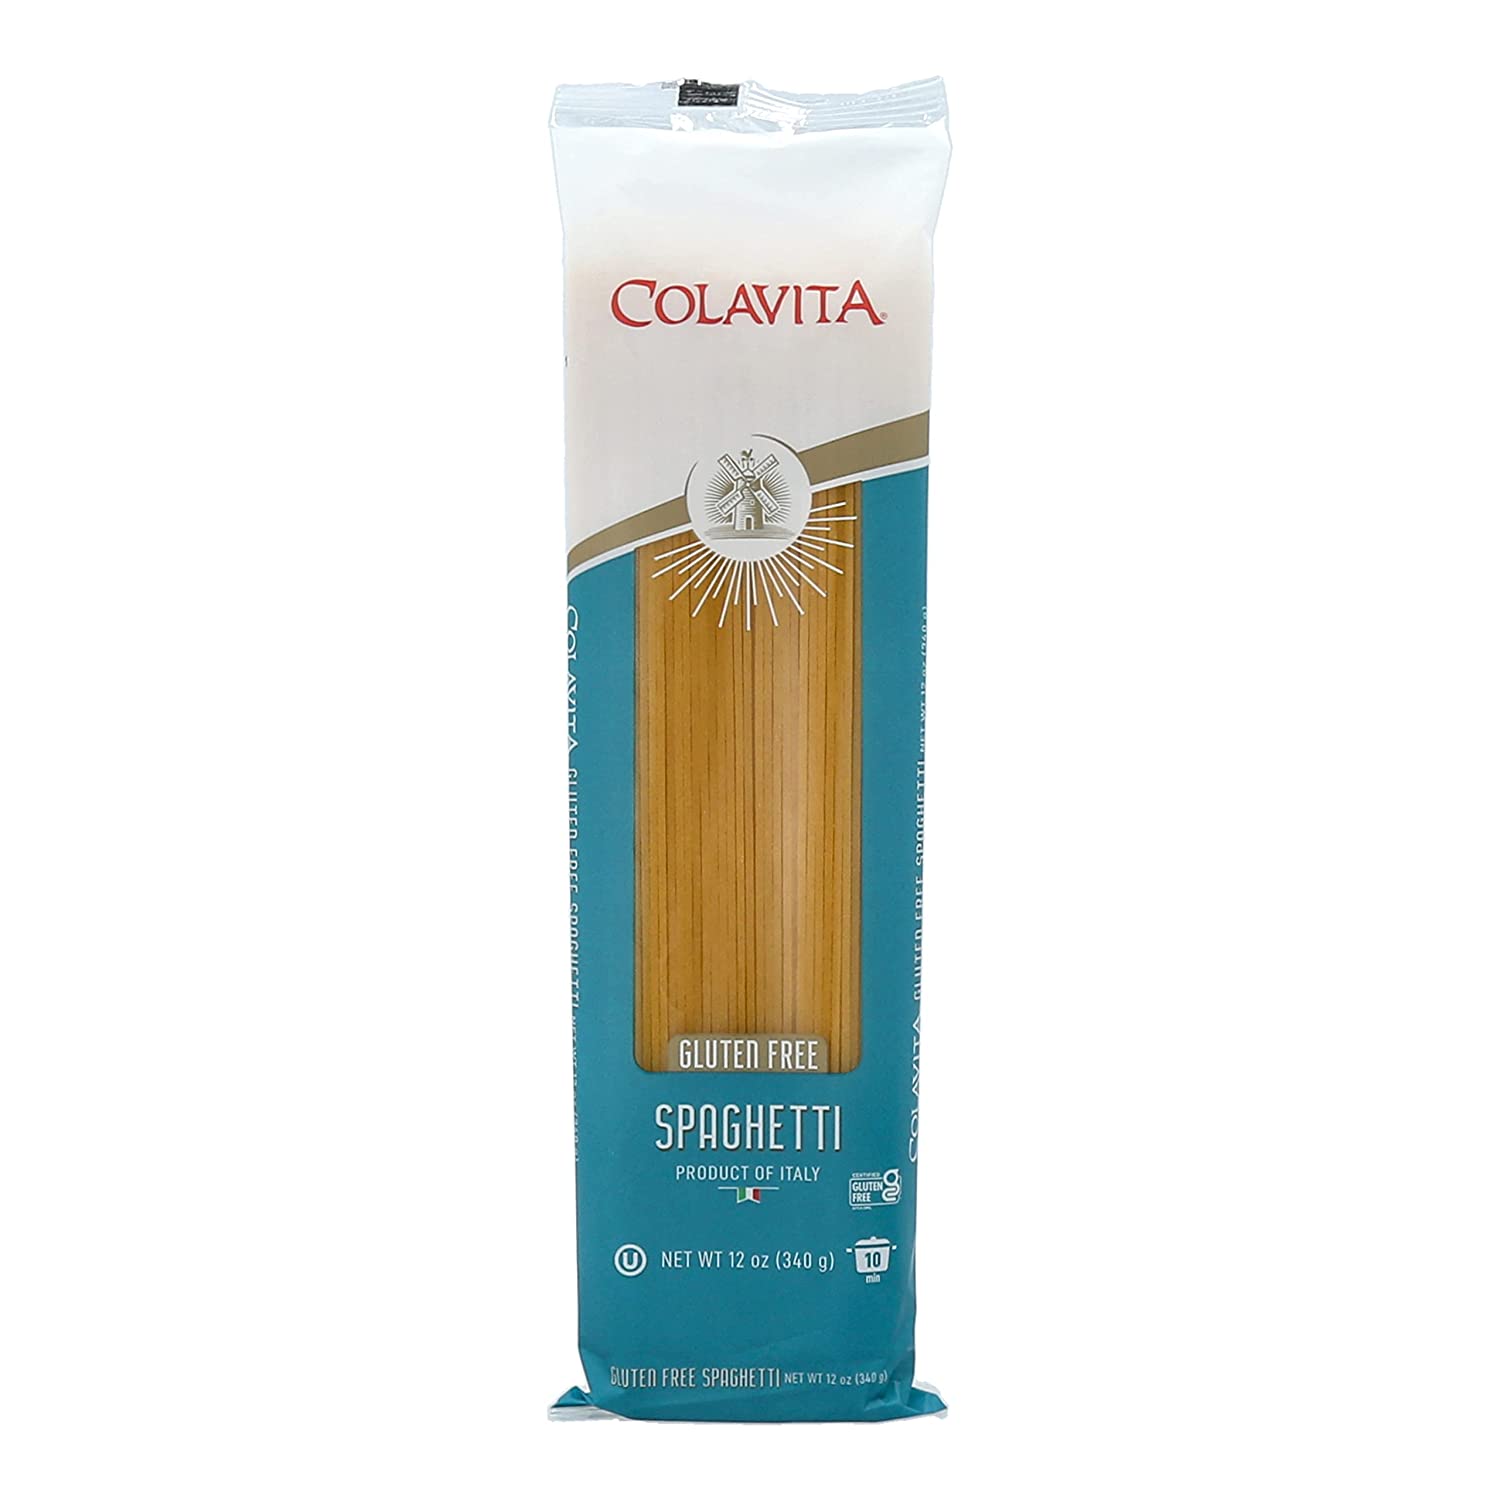 Colavita Gluten Free Spaghetti Pasta